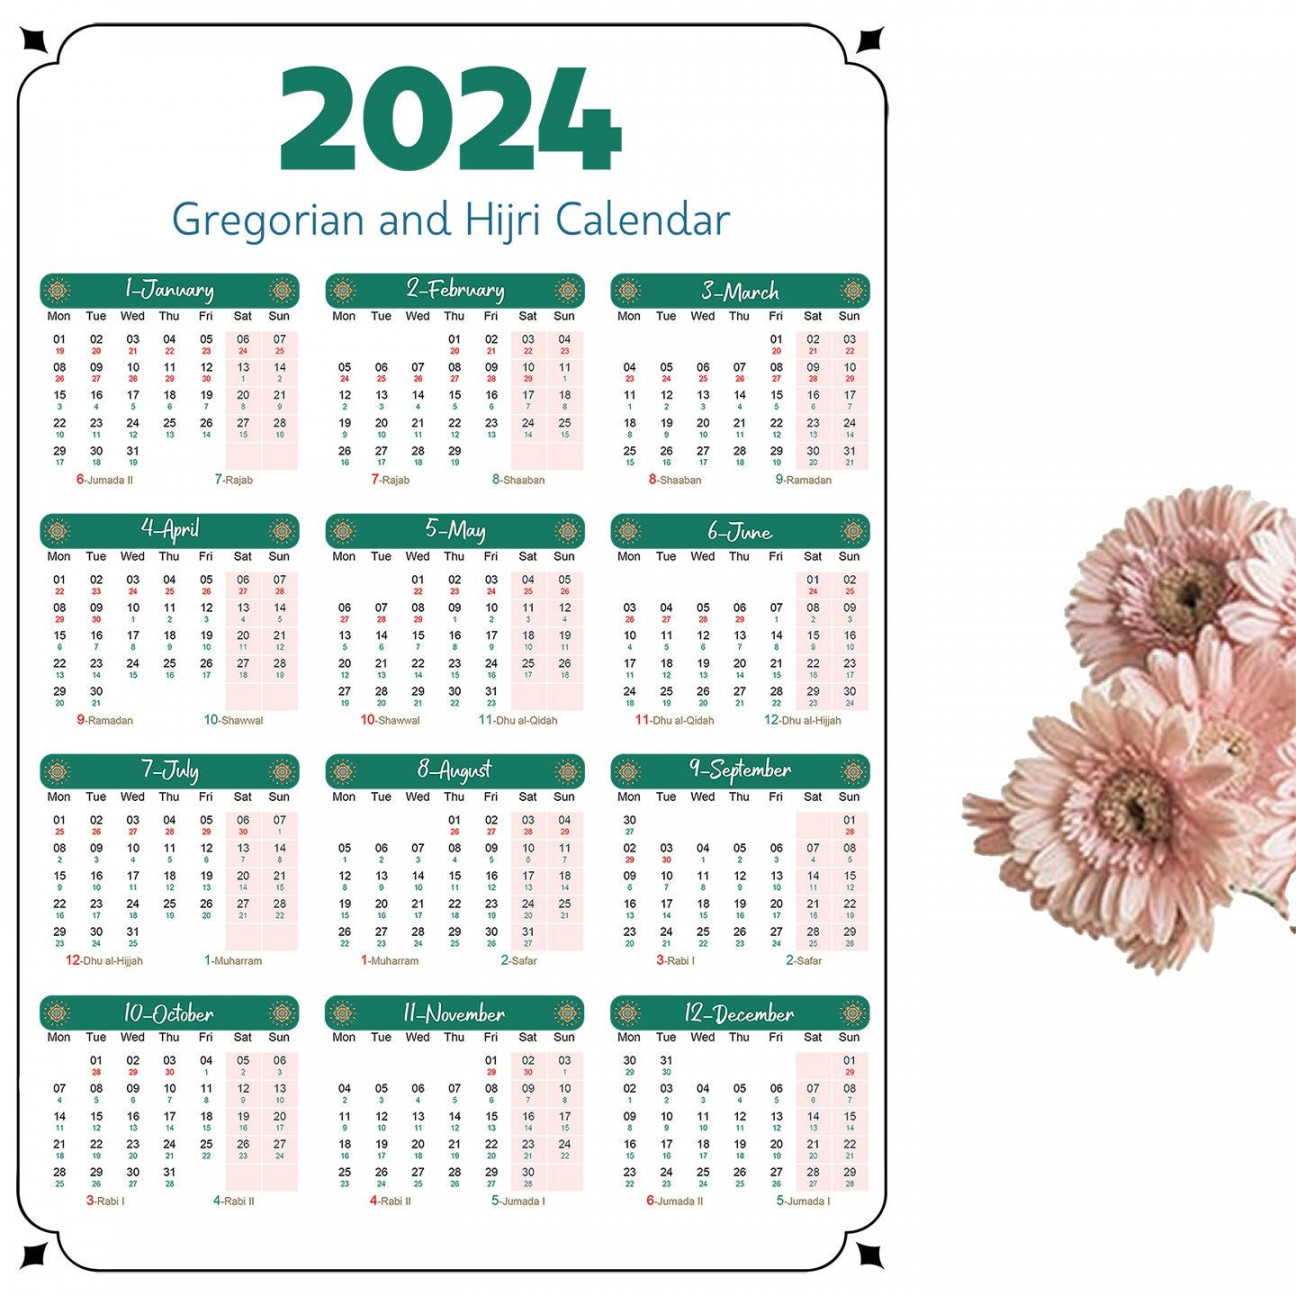 Gregorian and Hijri Calendar